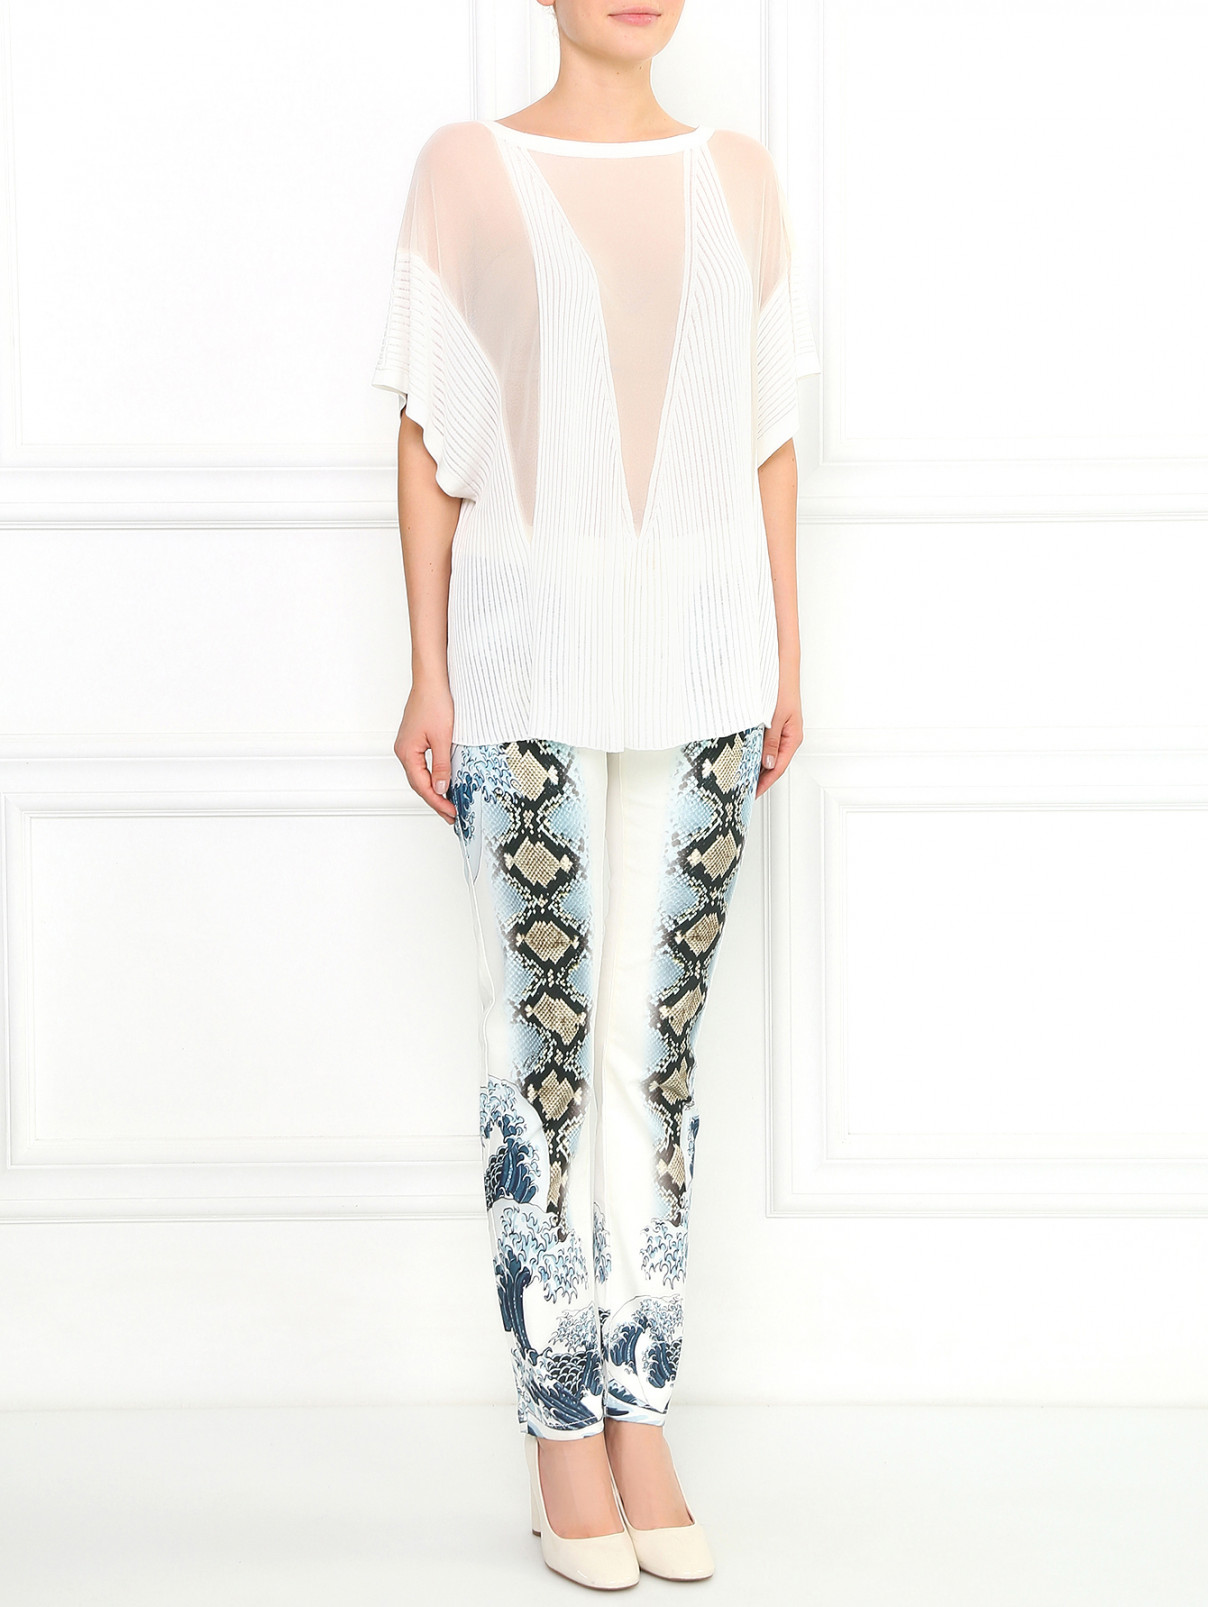 Узкие брюки из хлопка с принтом Just Cavalli  –  Модель Общий вид  – Цвет:  Белый